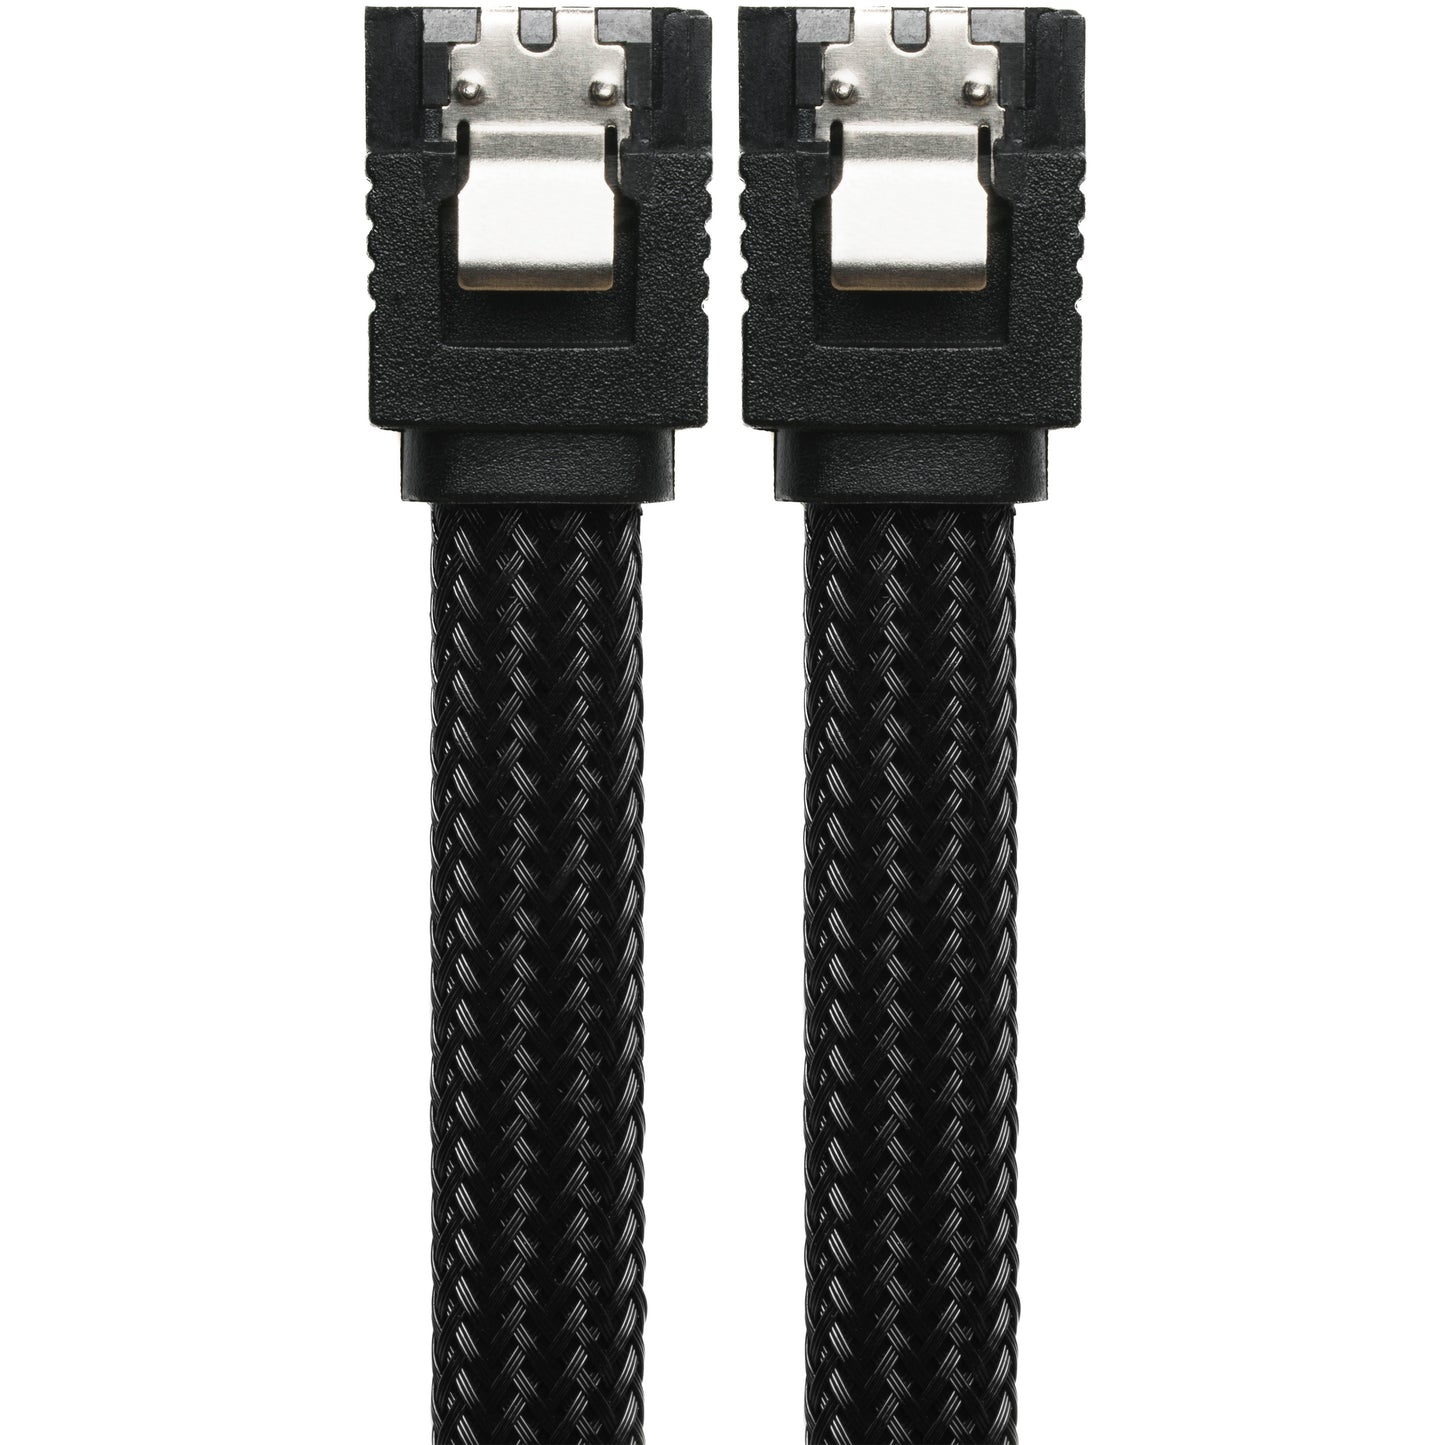 SATA 3.0 7-Pin Black Sleeved Data Cable